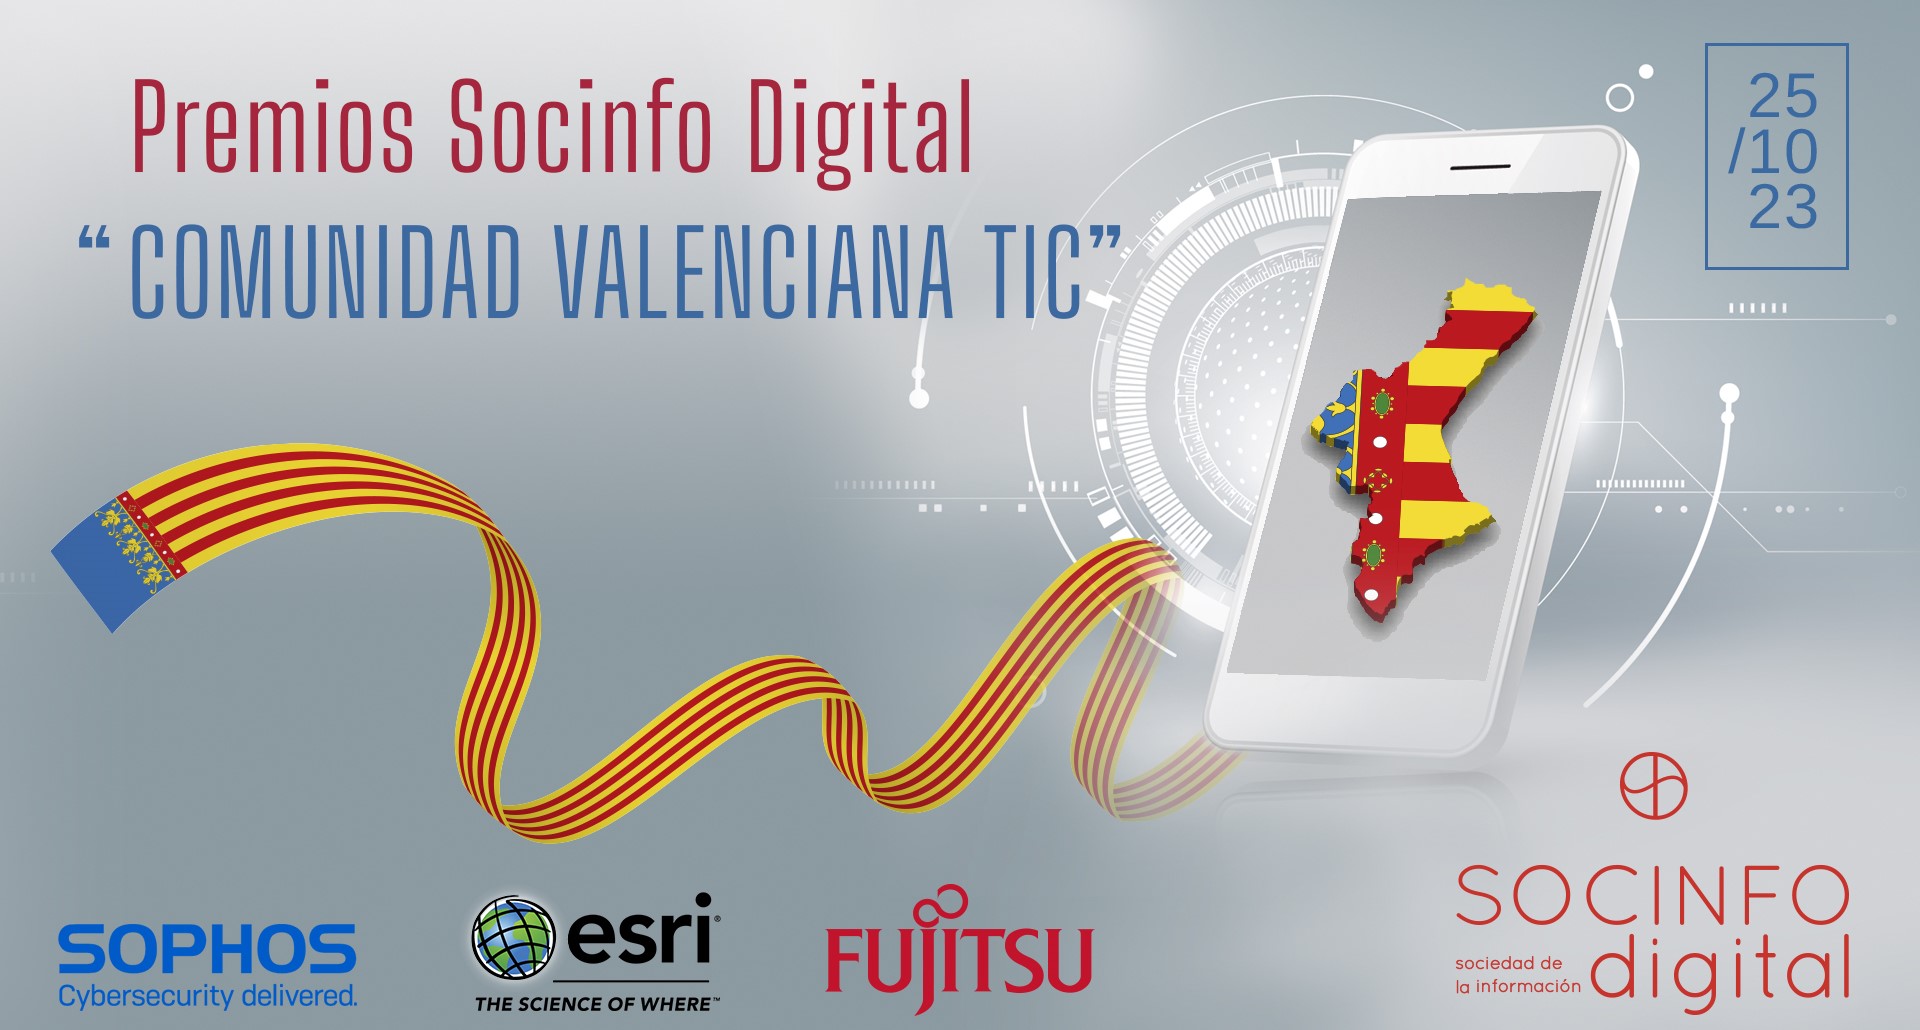 La Revista Sociedad de la Información Digital convoca los Premios Socinfo Digital: “COMUNIDAD VALENCIA TIC”